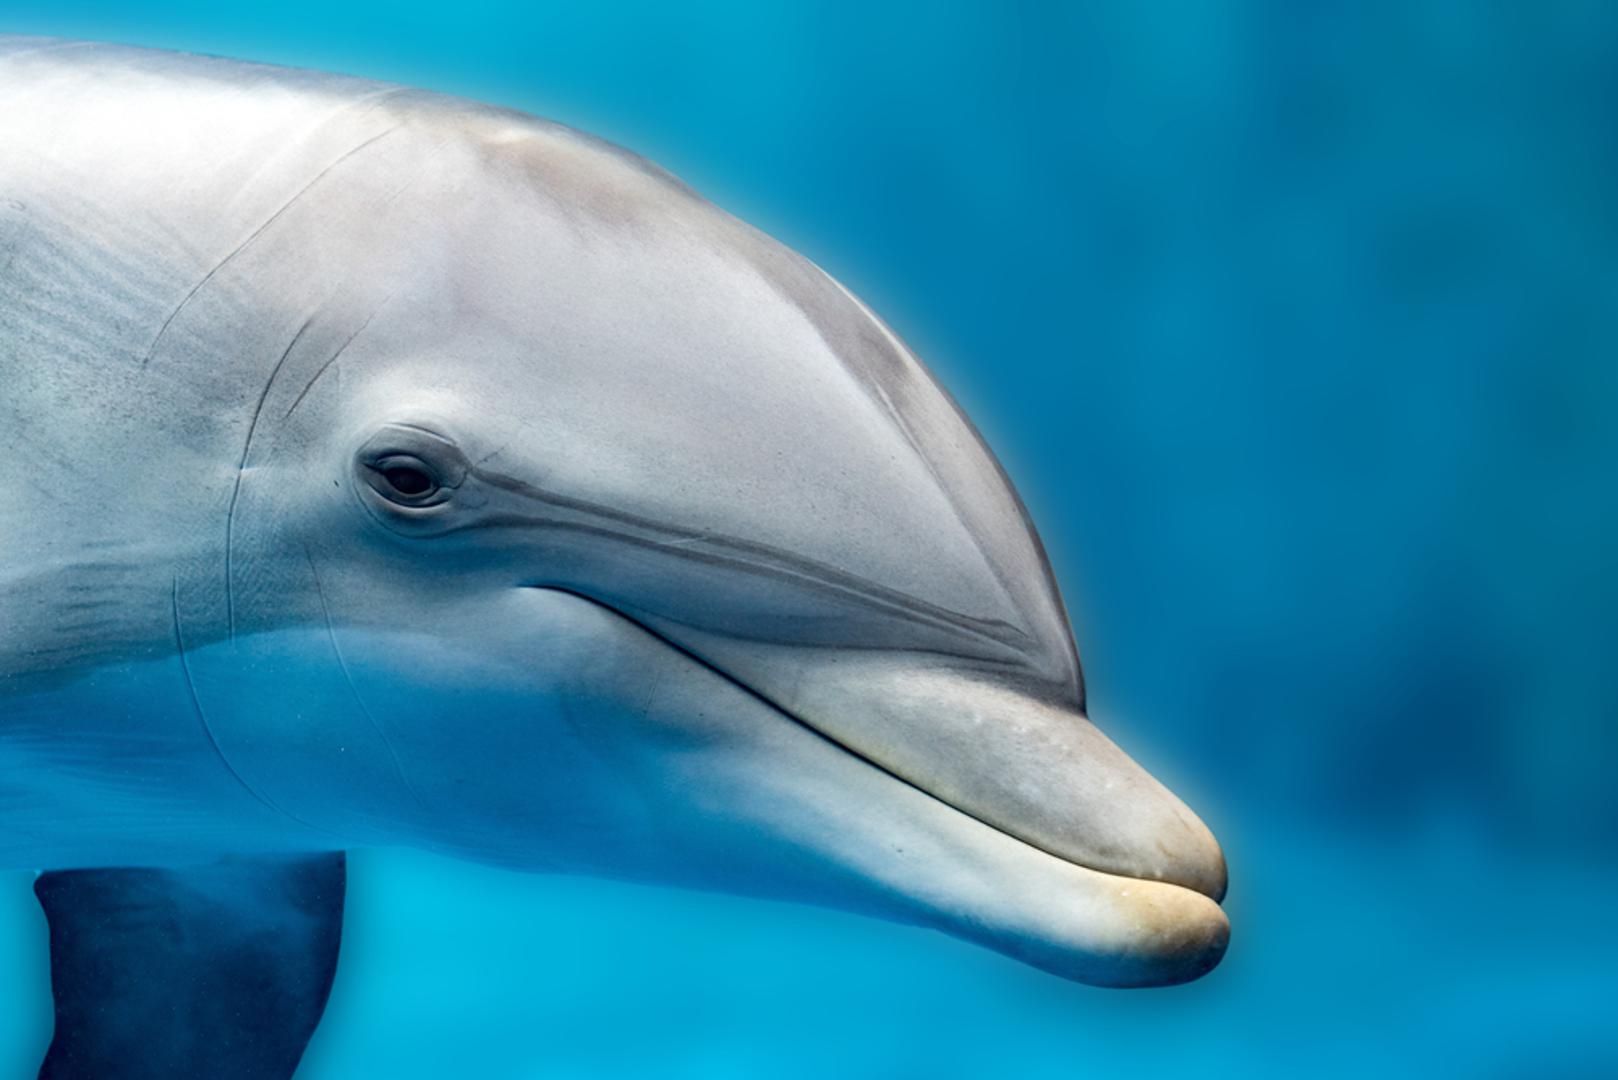 Delfin: Ove pametne životinje jako brzo uče, znaju rješavati probleme te oponašati ljudsko ponašanje. Znanstvenici su dokazali kako se delfini redovito igraju iz zabave, pri čemu kao igračke koriste školjke. Ispuštaju jedinstvene zvukove kako bi međusobno komunicirali.